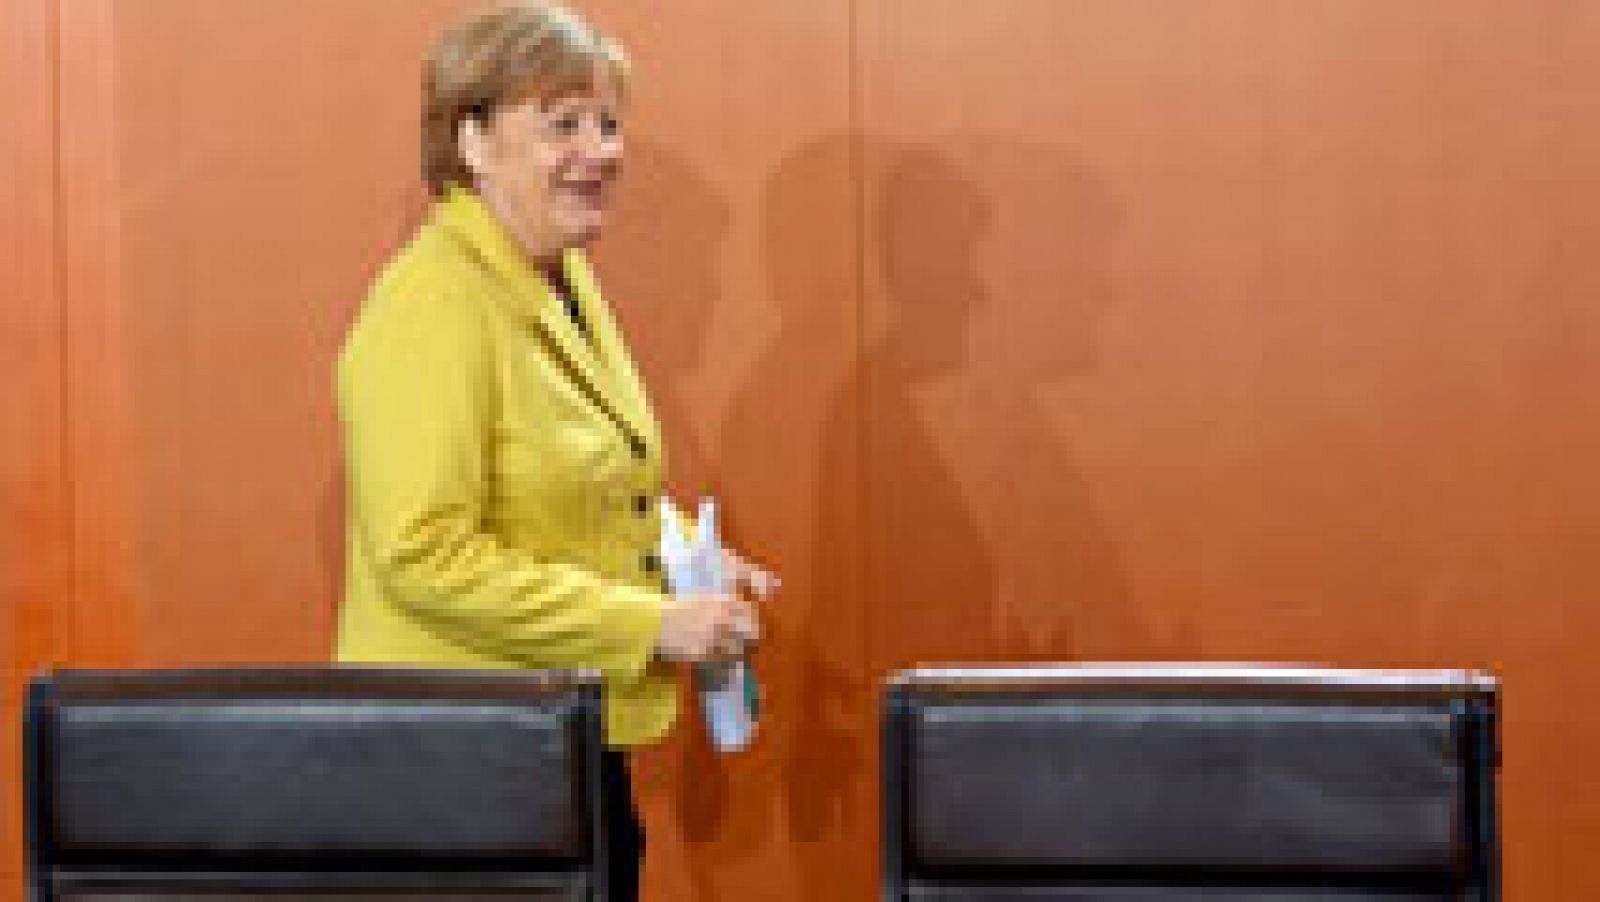 Alemania estudia estrategias concretas ante una posible salida de Grecia de la eurozona, según el diario 'Bild'